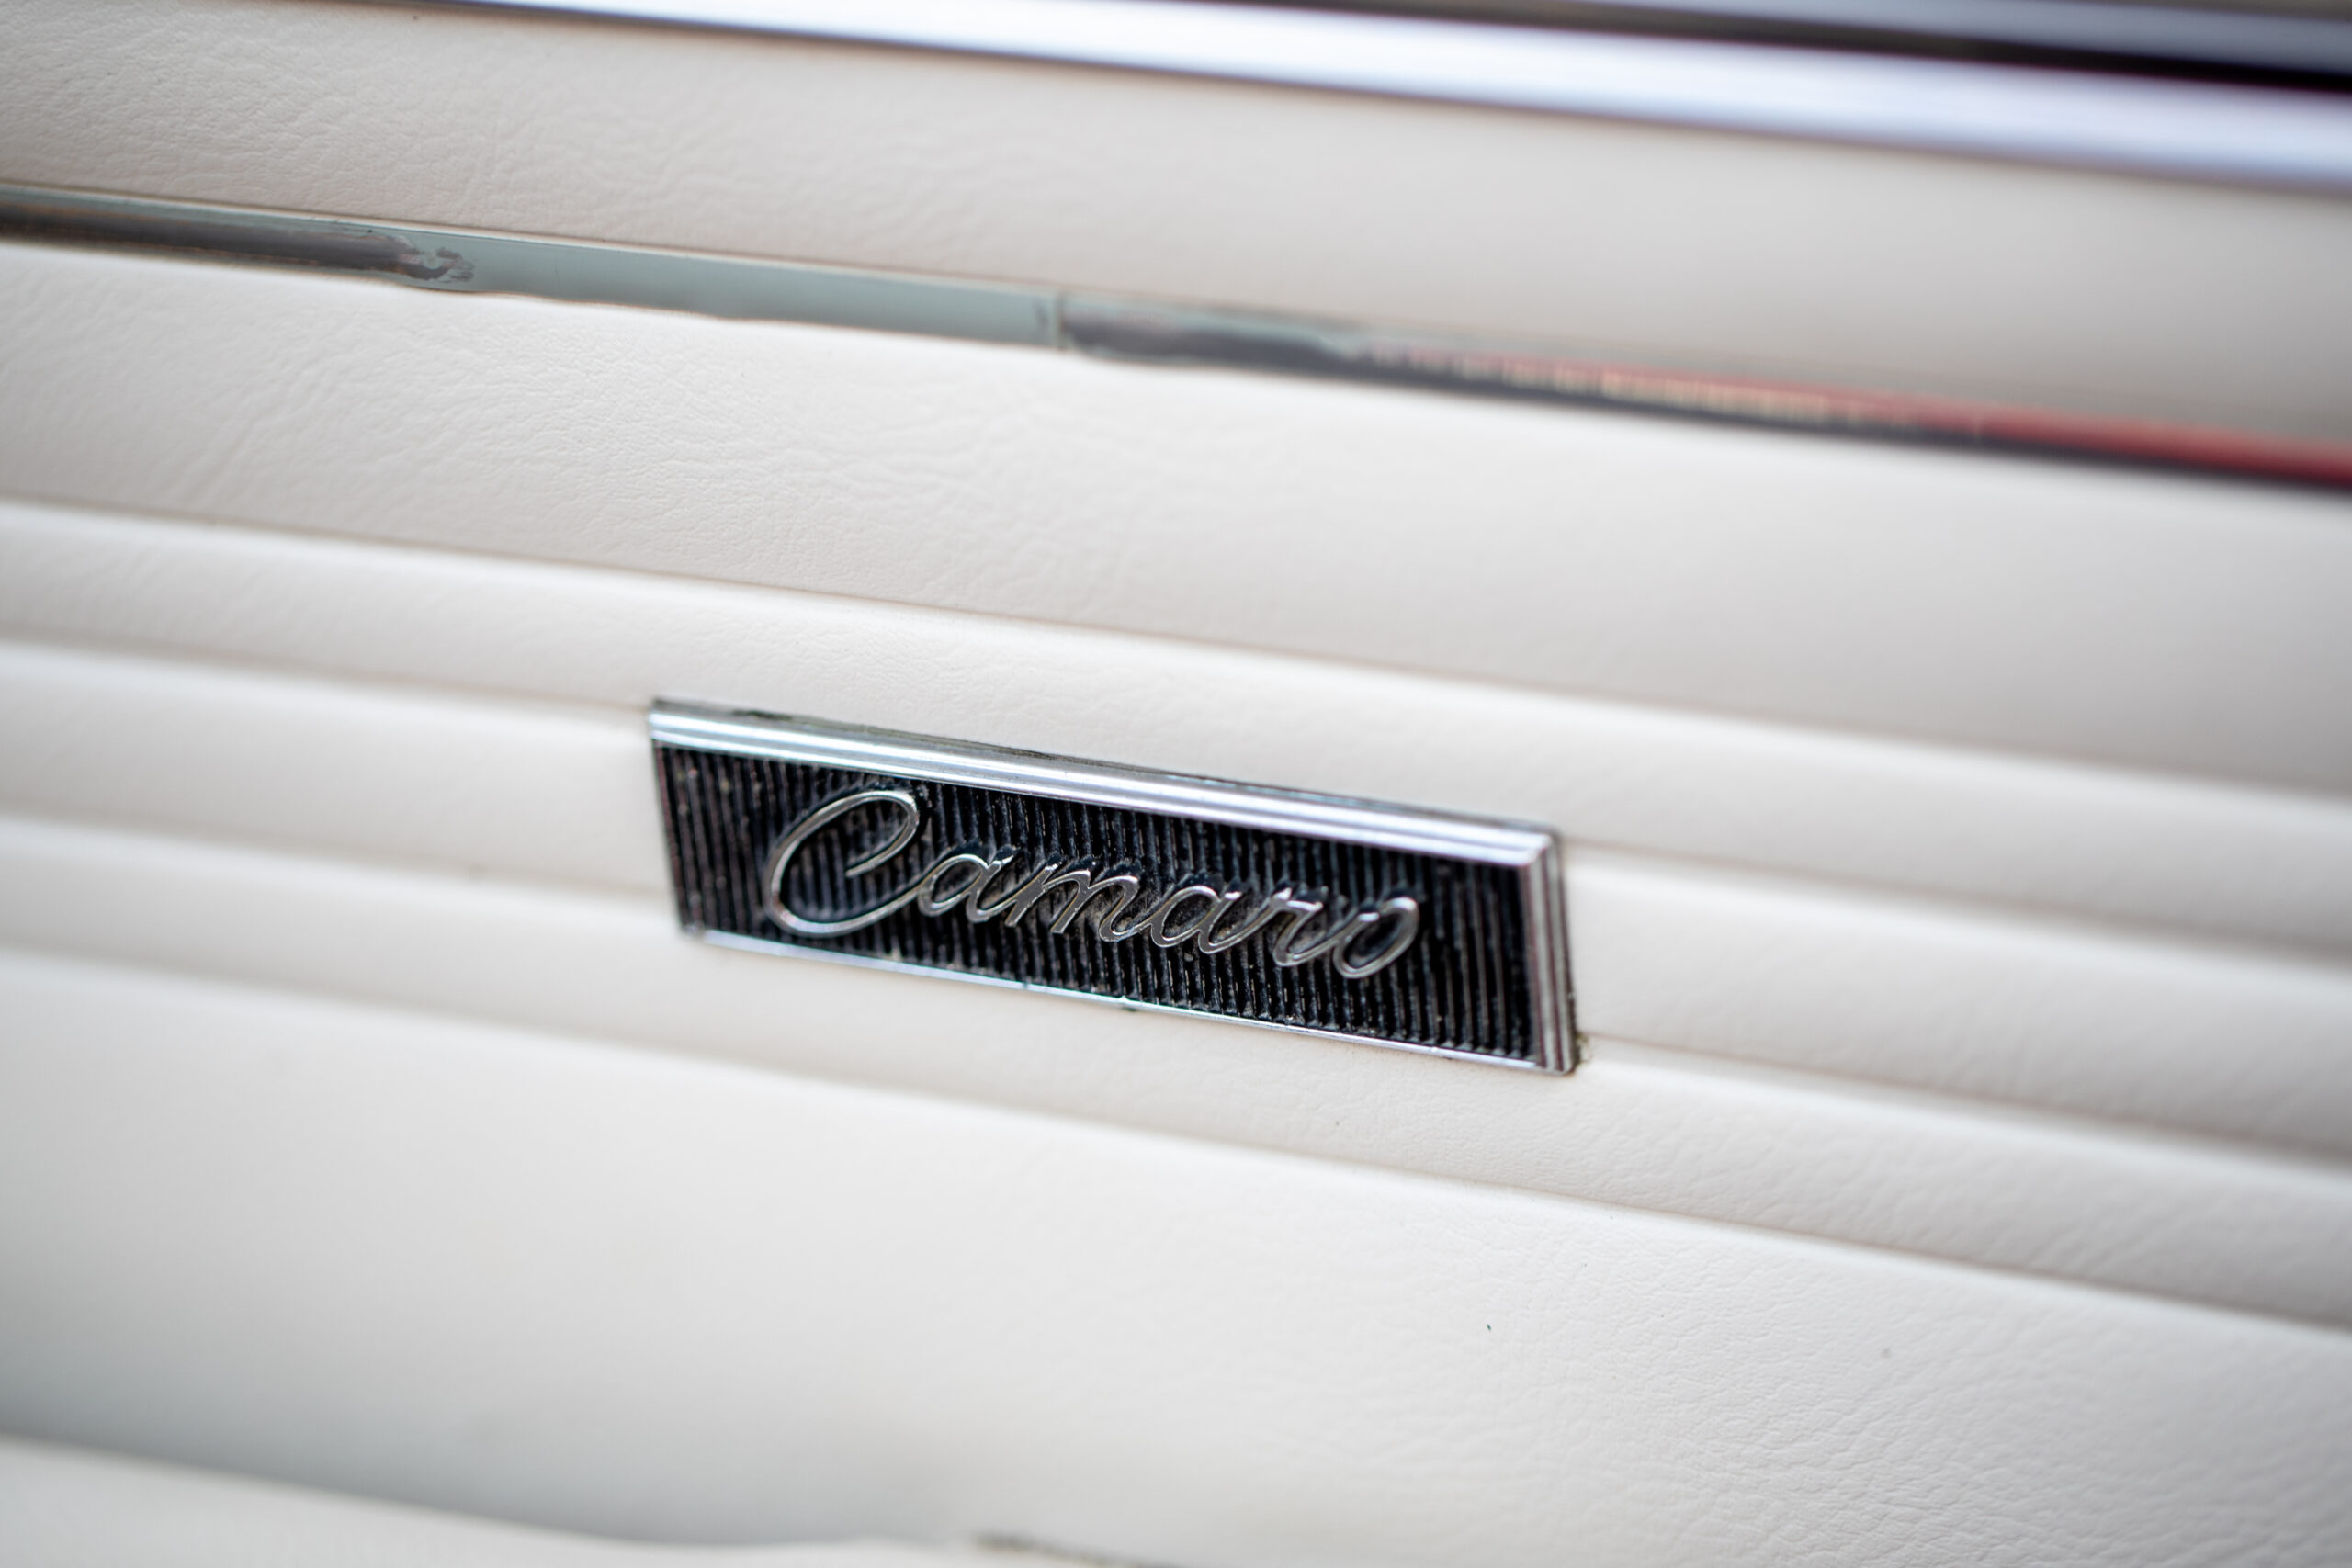 Close-up of a metal "Camaro" emblem on a white car door panel.